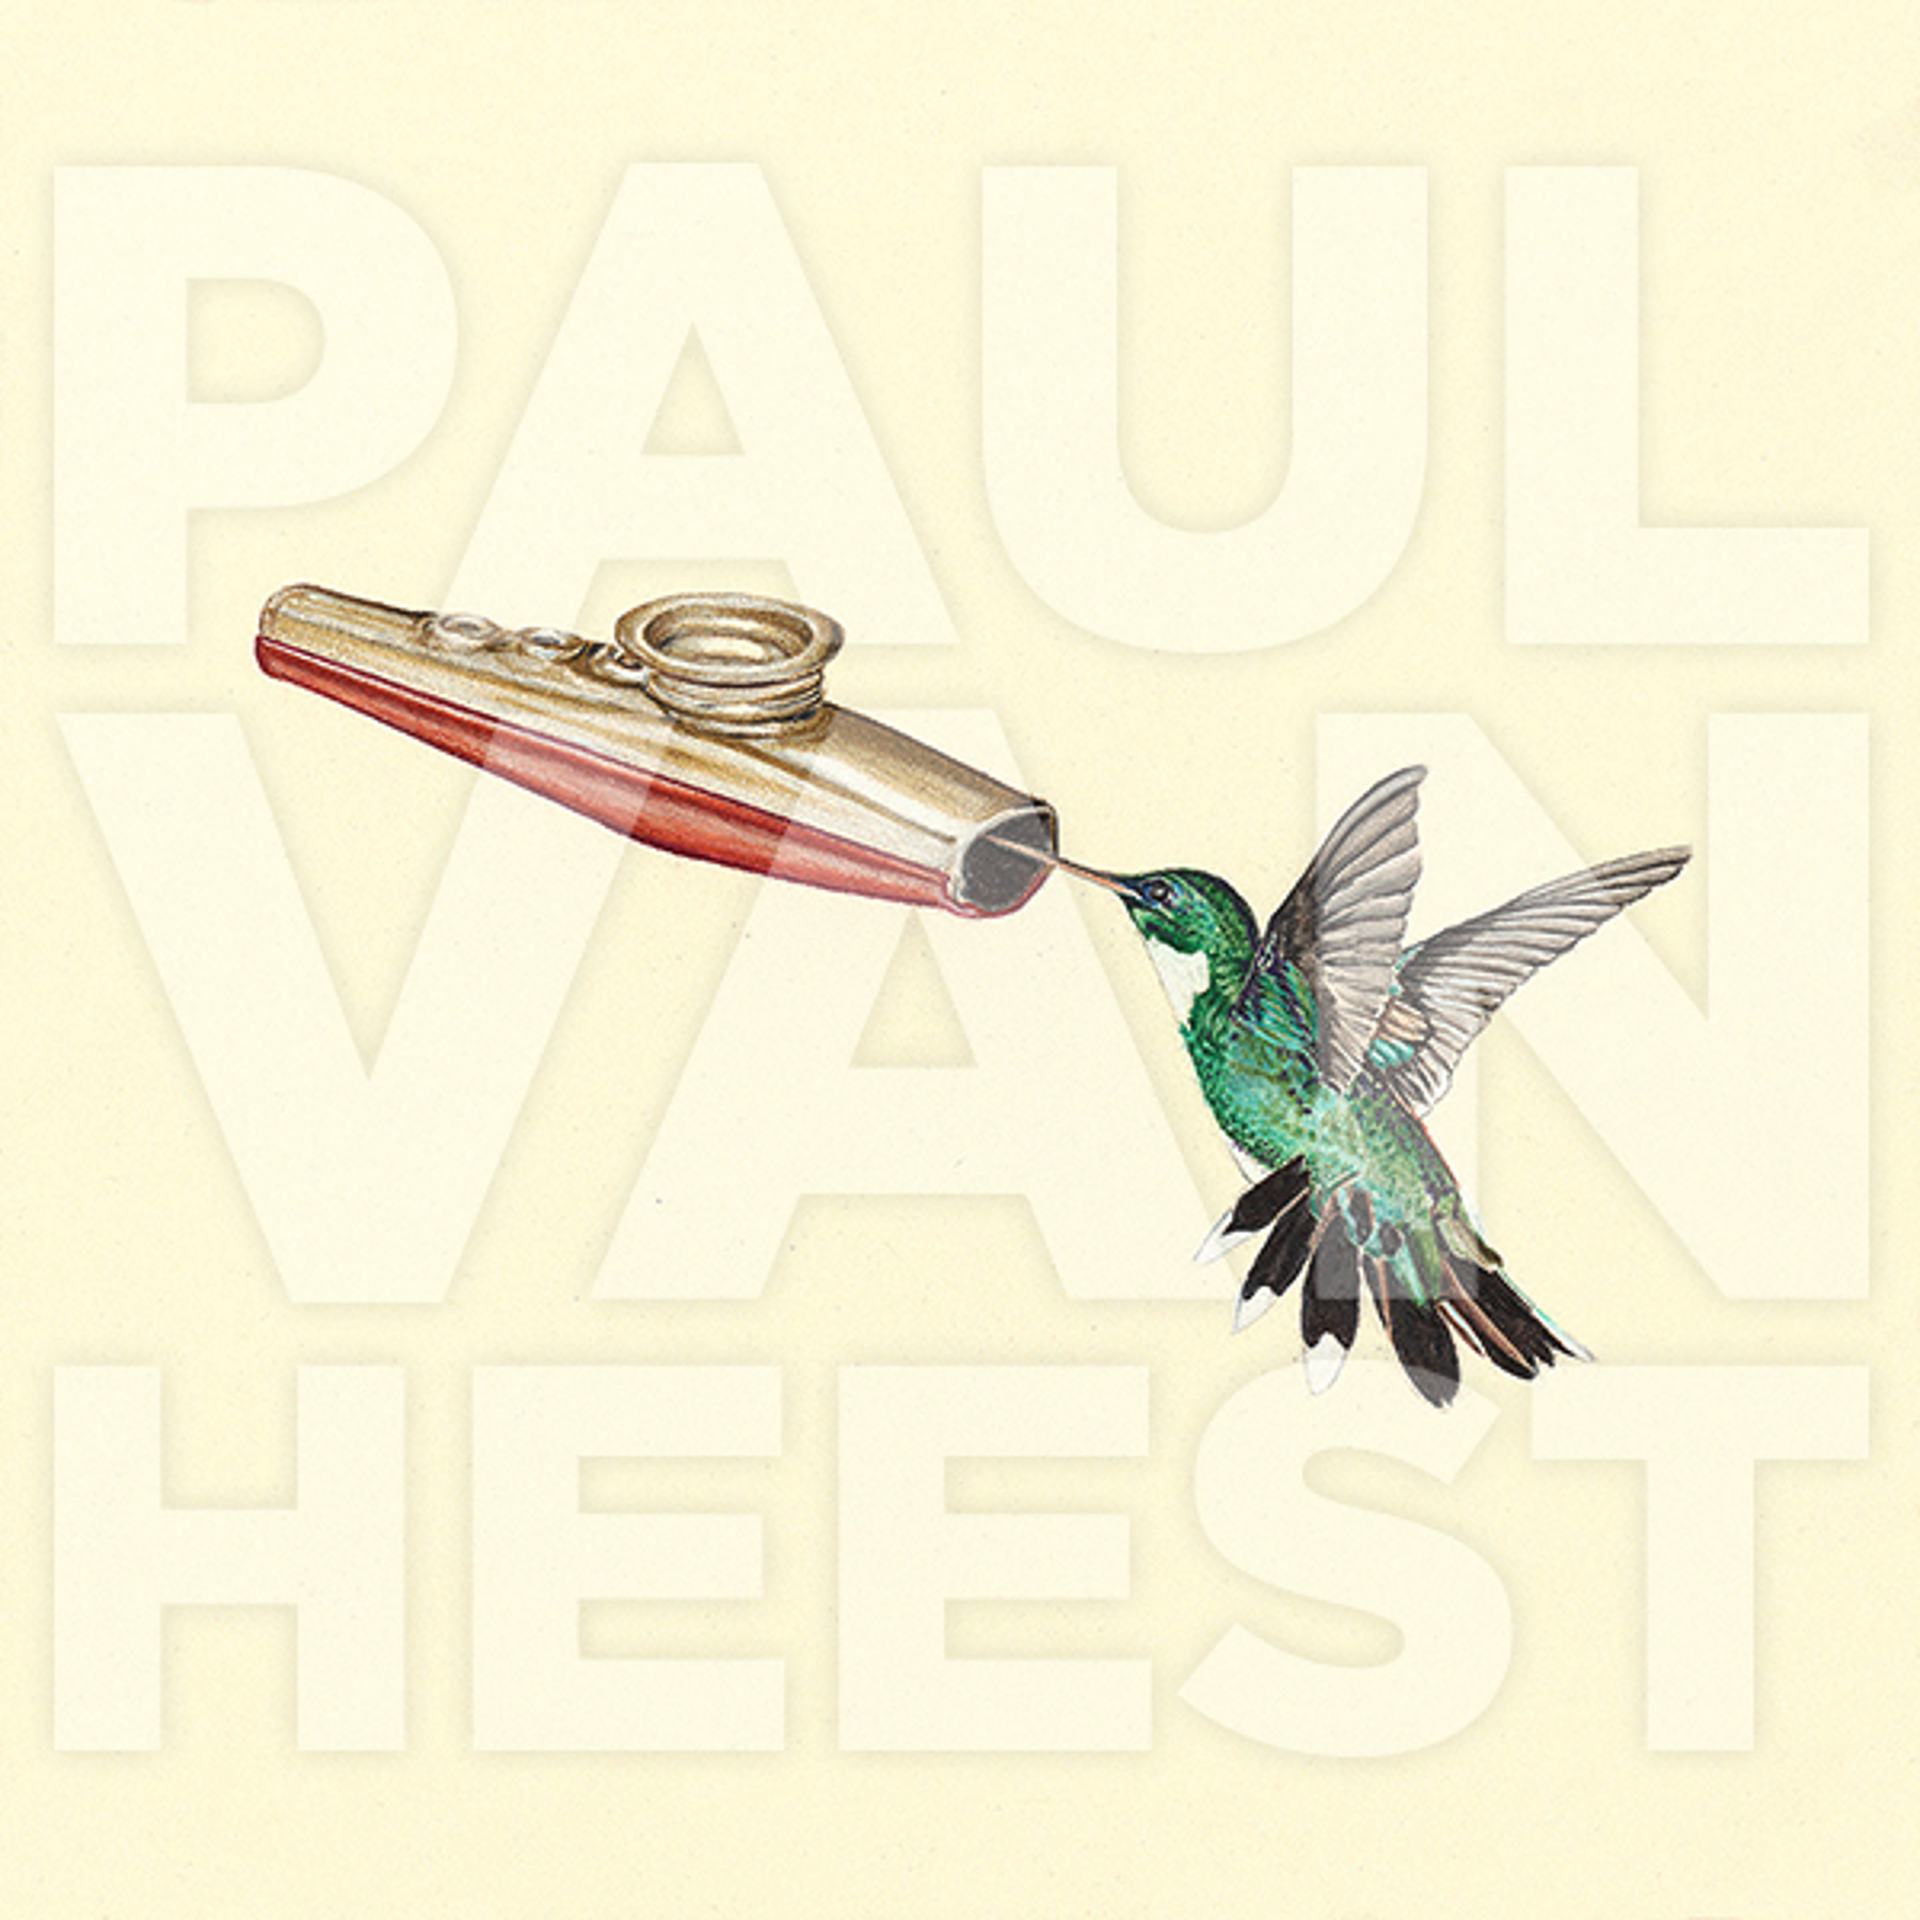 Hummingbird with Kazoo by Paul Van Heest